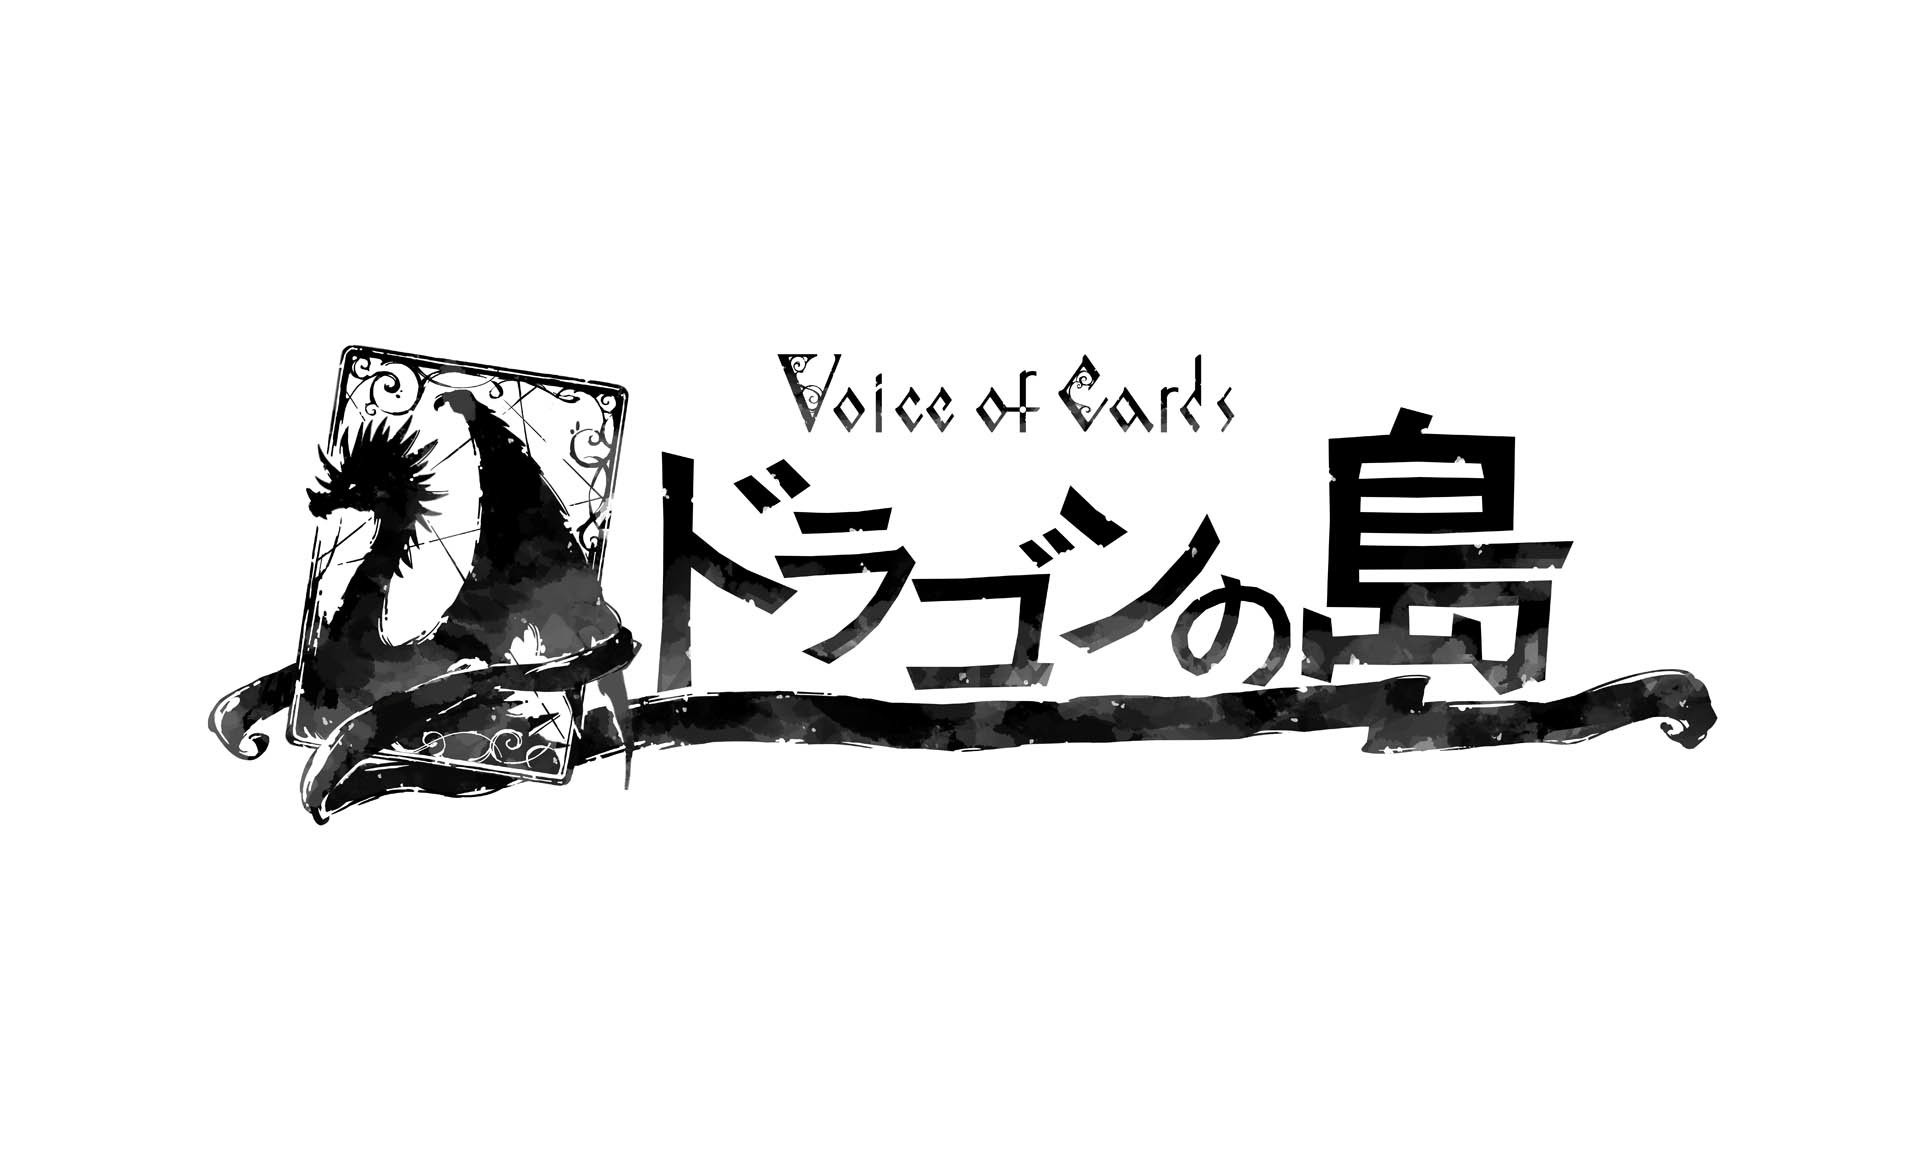 腦內演出 RPG《Voice of Cards 龍之島》公布主視覺圖及遊戲場規則等情報